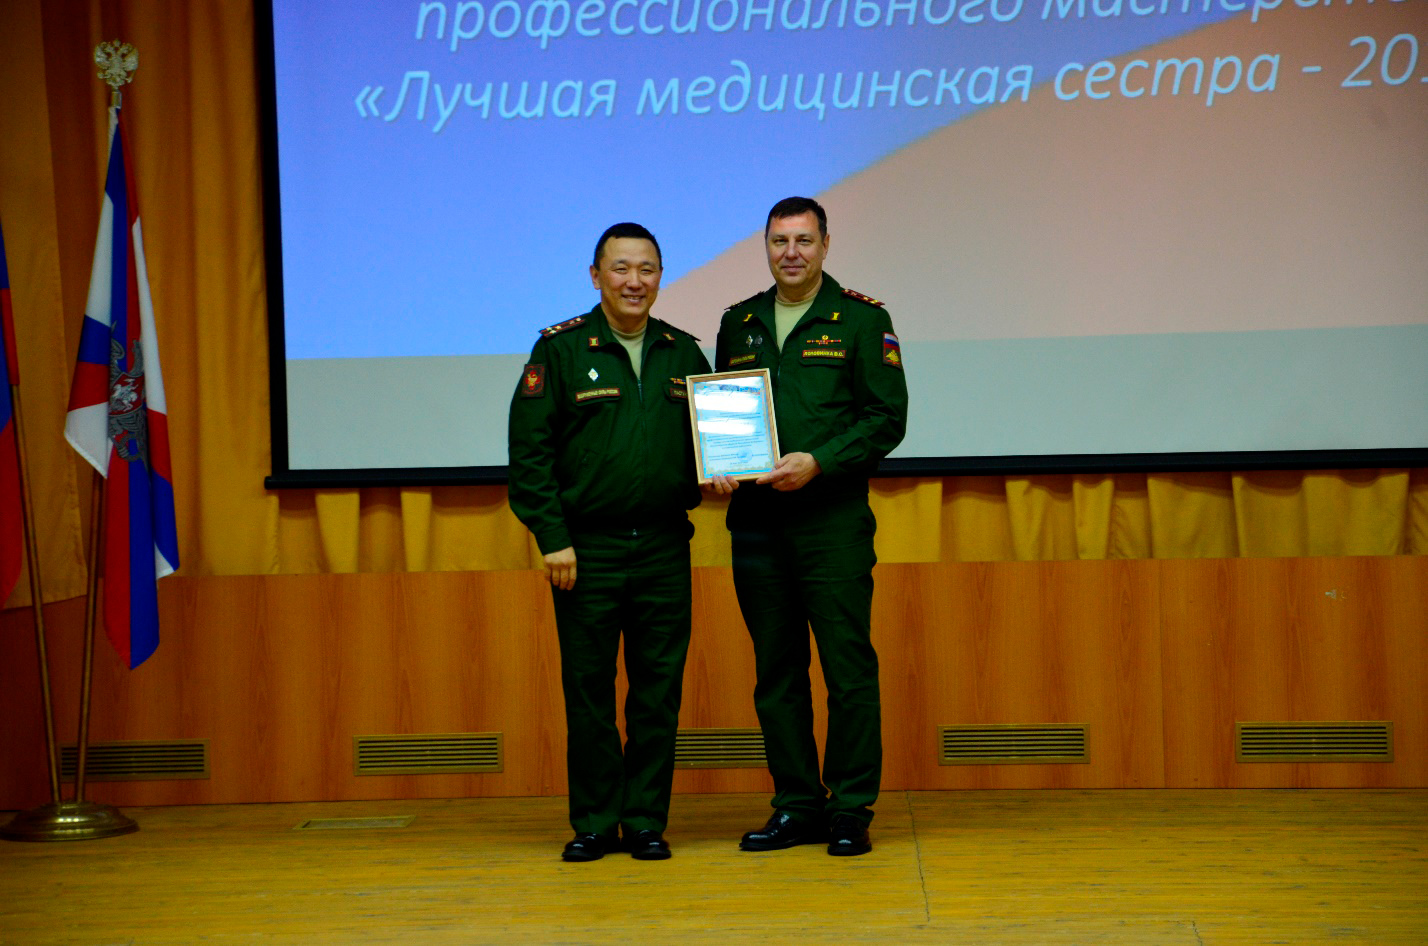 II конкурс профессионального мастерства среди медицинских сестер военно-медицинских организаций Министерства обороны Российской Федерации